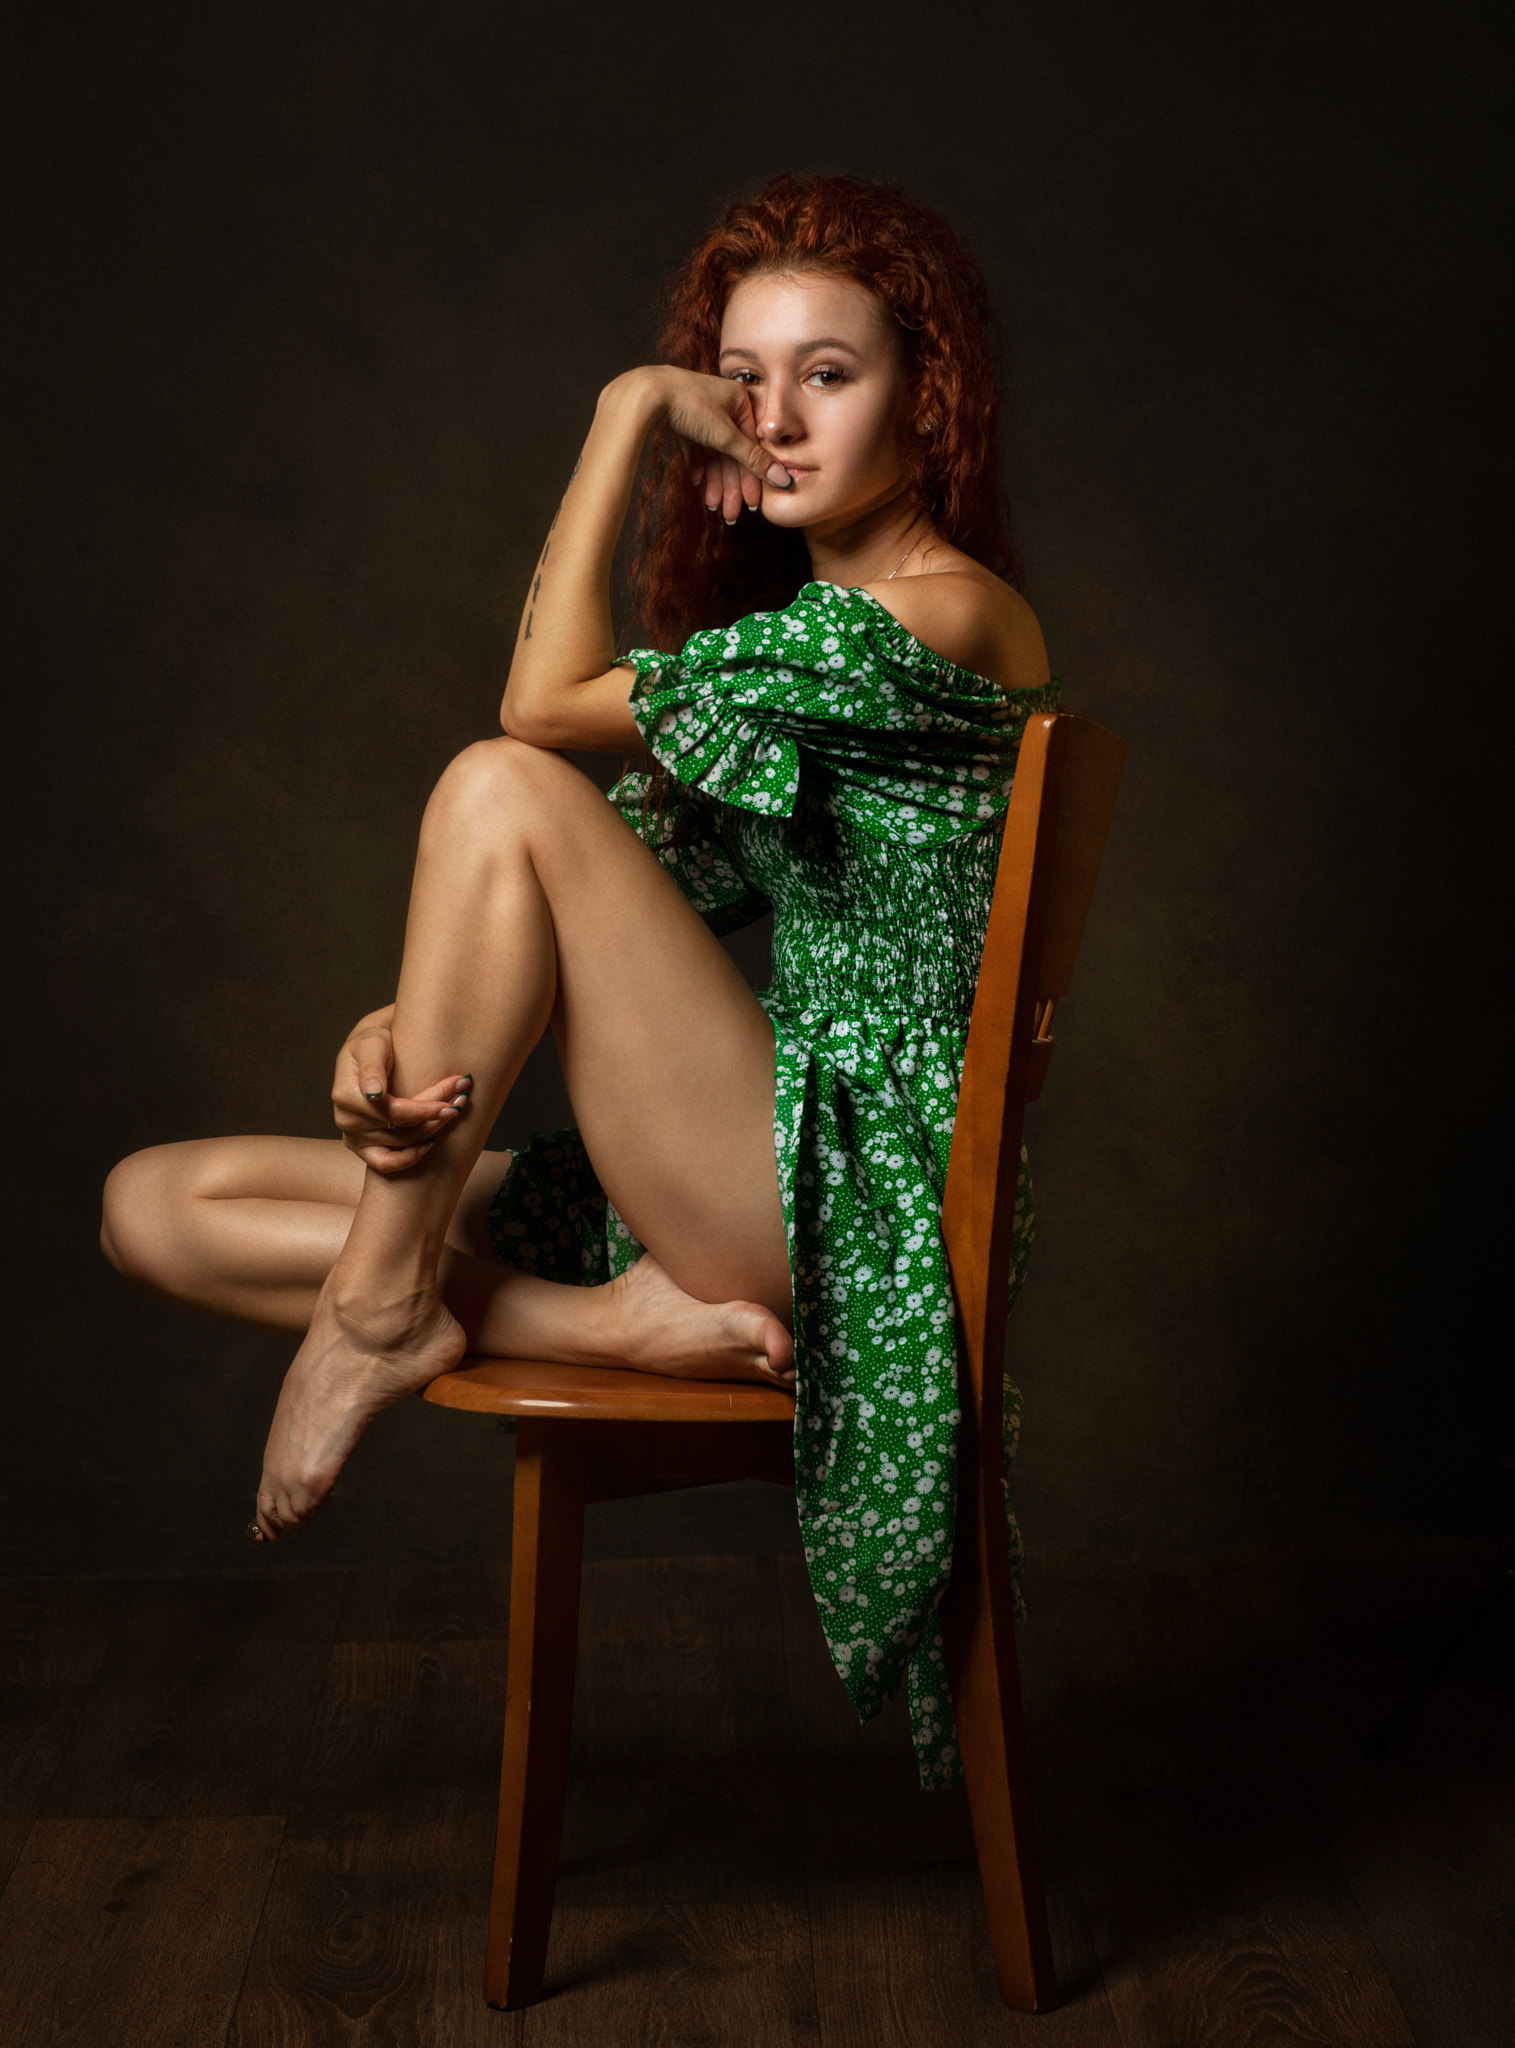 Zachar Rise Women Redhead Dress Legs Barefoot Chair Warm Curly Hair Freckles 1515x2048